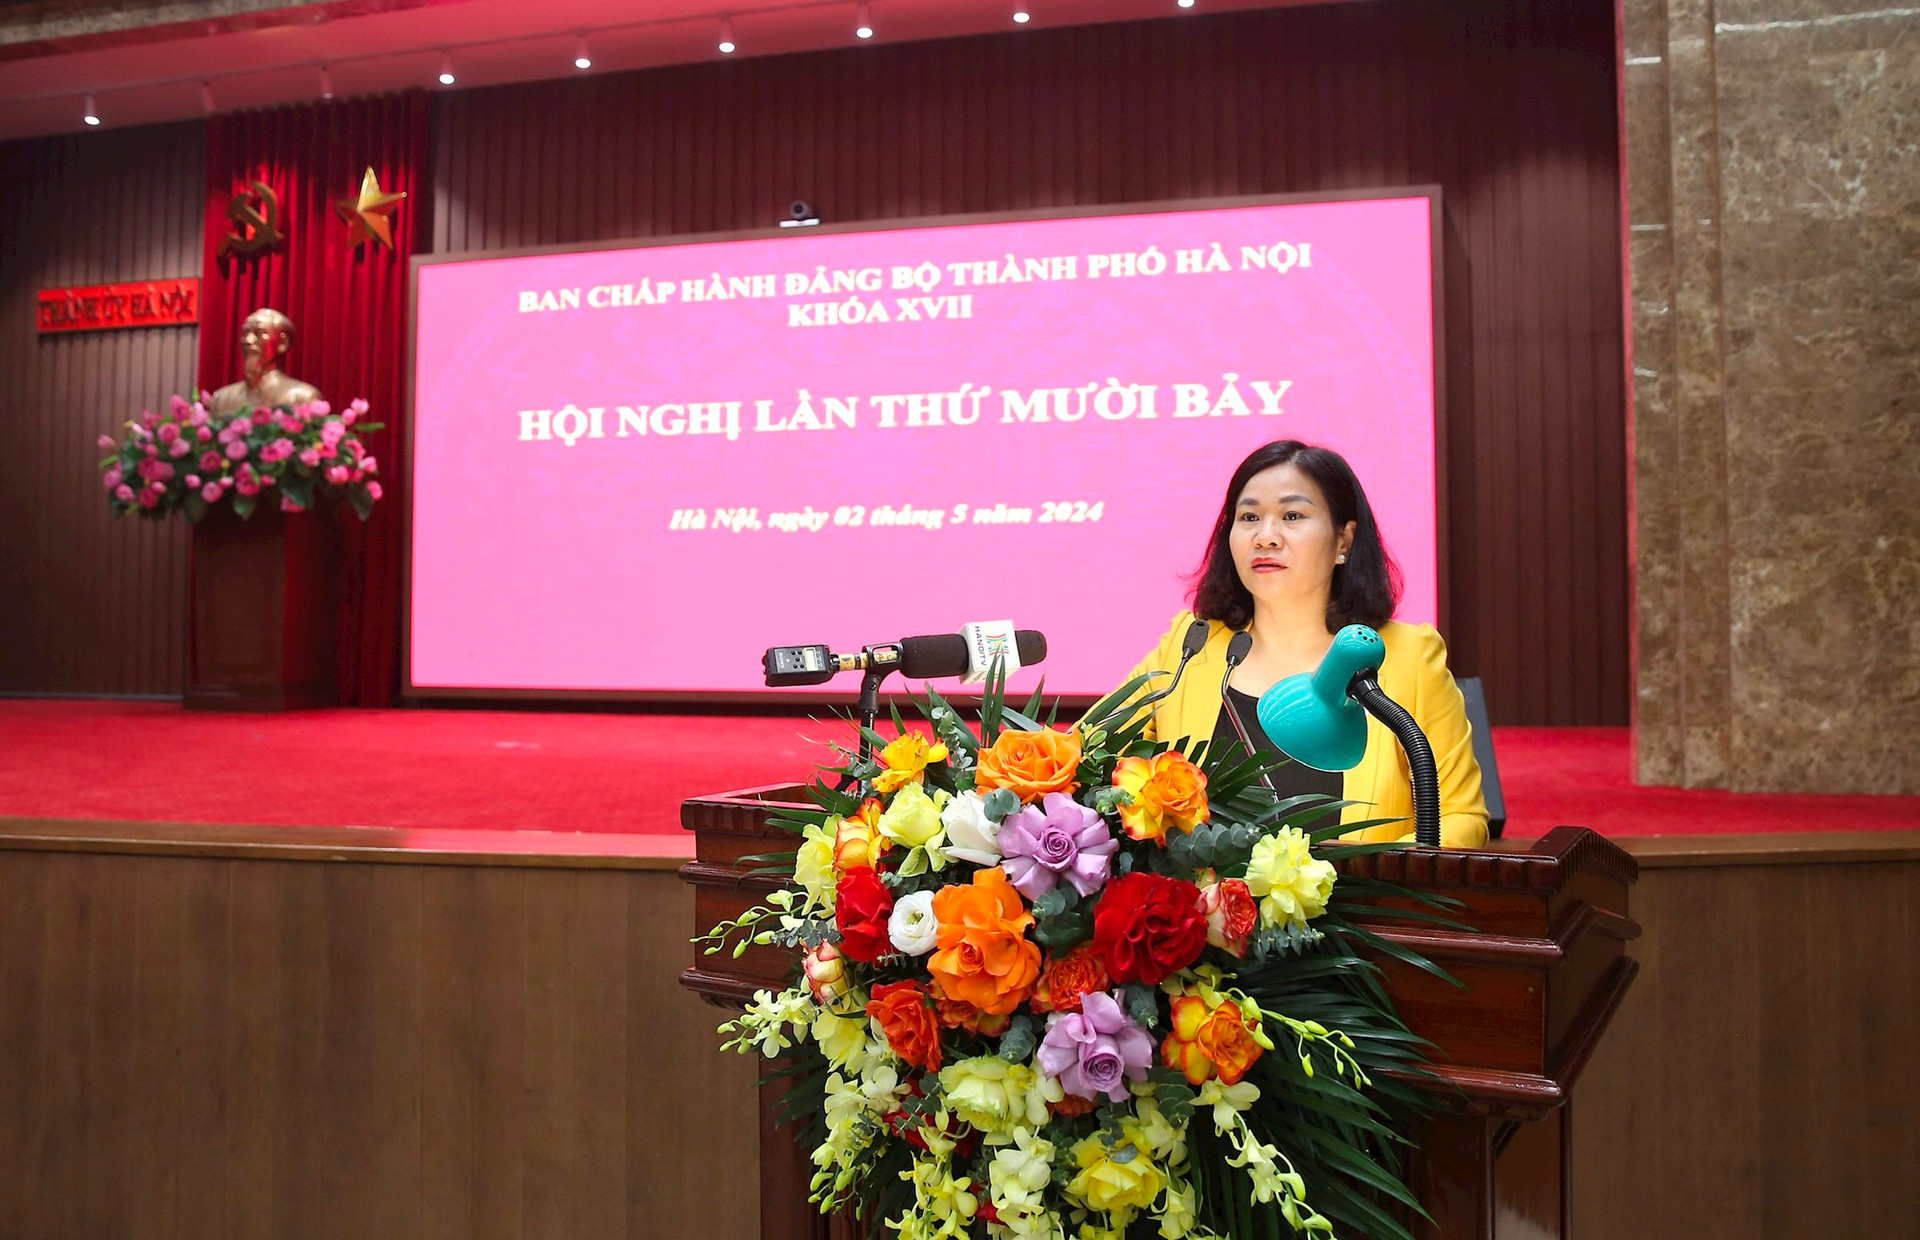 Phó Bí thư Thường trực Thành ủy Nguyễn Thị Tuyến phát biểu kết luận Hội nghị lần thứ mười bảy, Ban Chấp hành Đảng bộ thành phố. Ảnh: Viết Thành